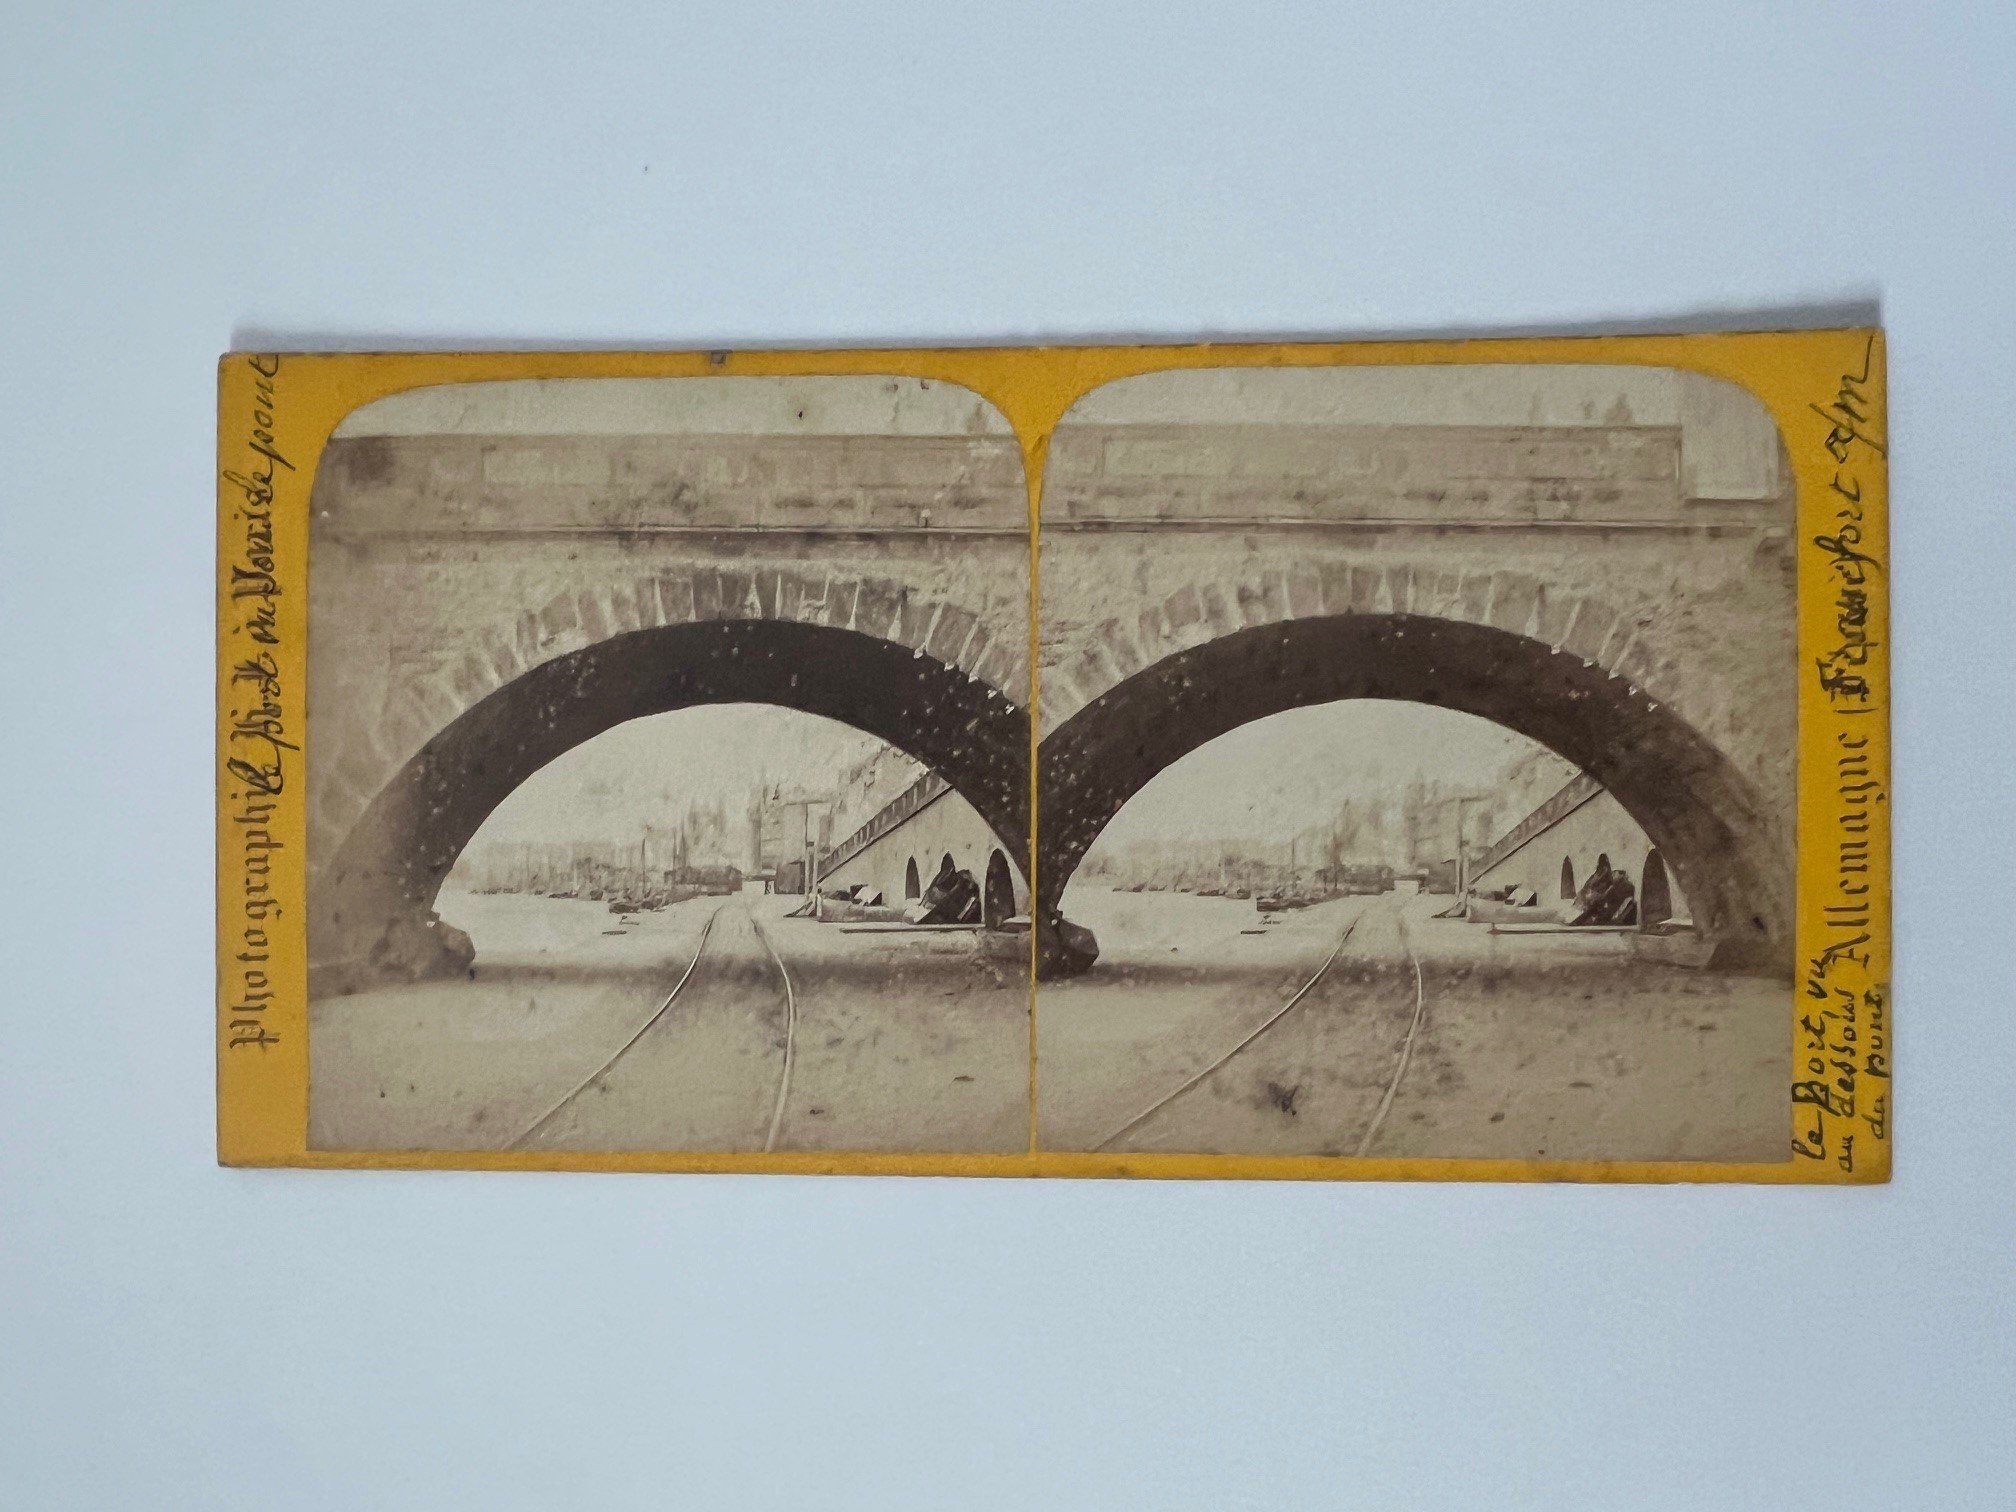 Stereobild, Hippolyte Jouvin, Frankfurt, Nr. 386, vue du Port, prise au-dessous du pont, ca. 1868. (Taunus-Rhein-Main - Regionalgeschichtliche Sammlung Dr. Stefan Naas CC BY-NC-SA)